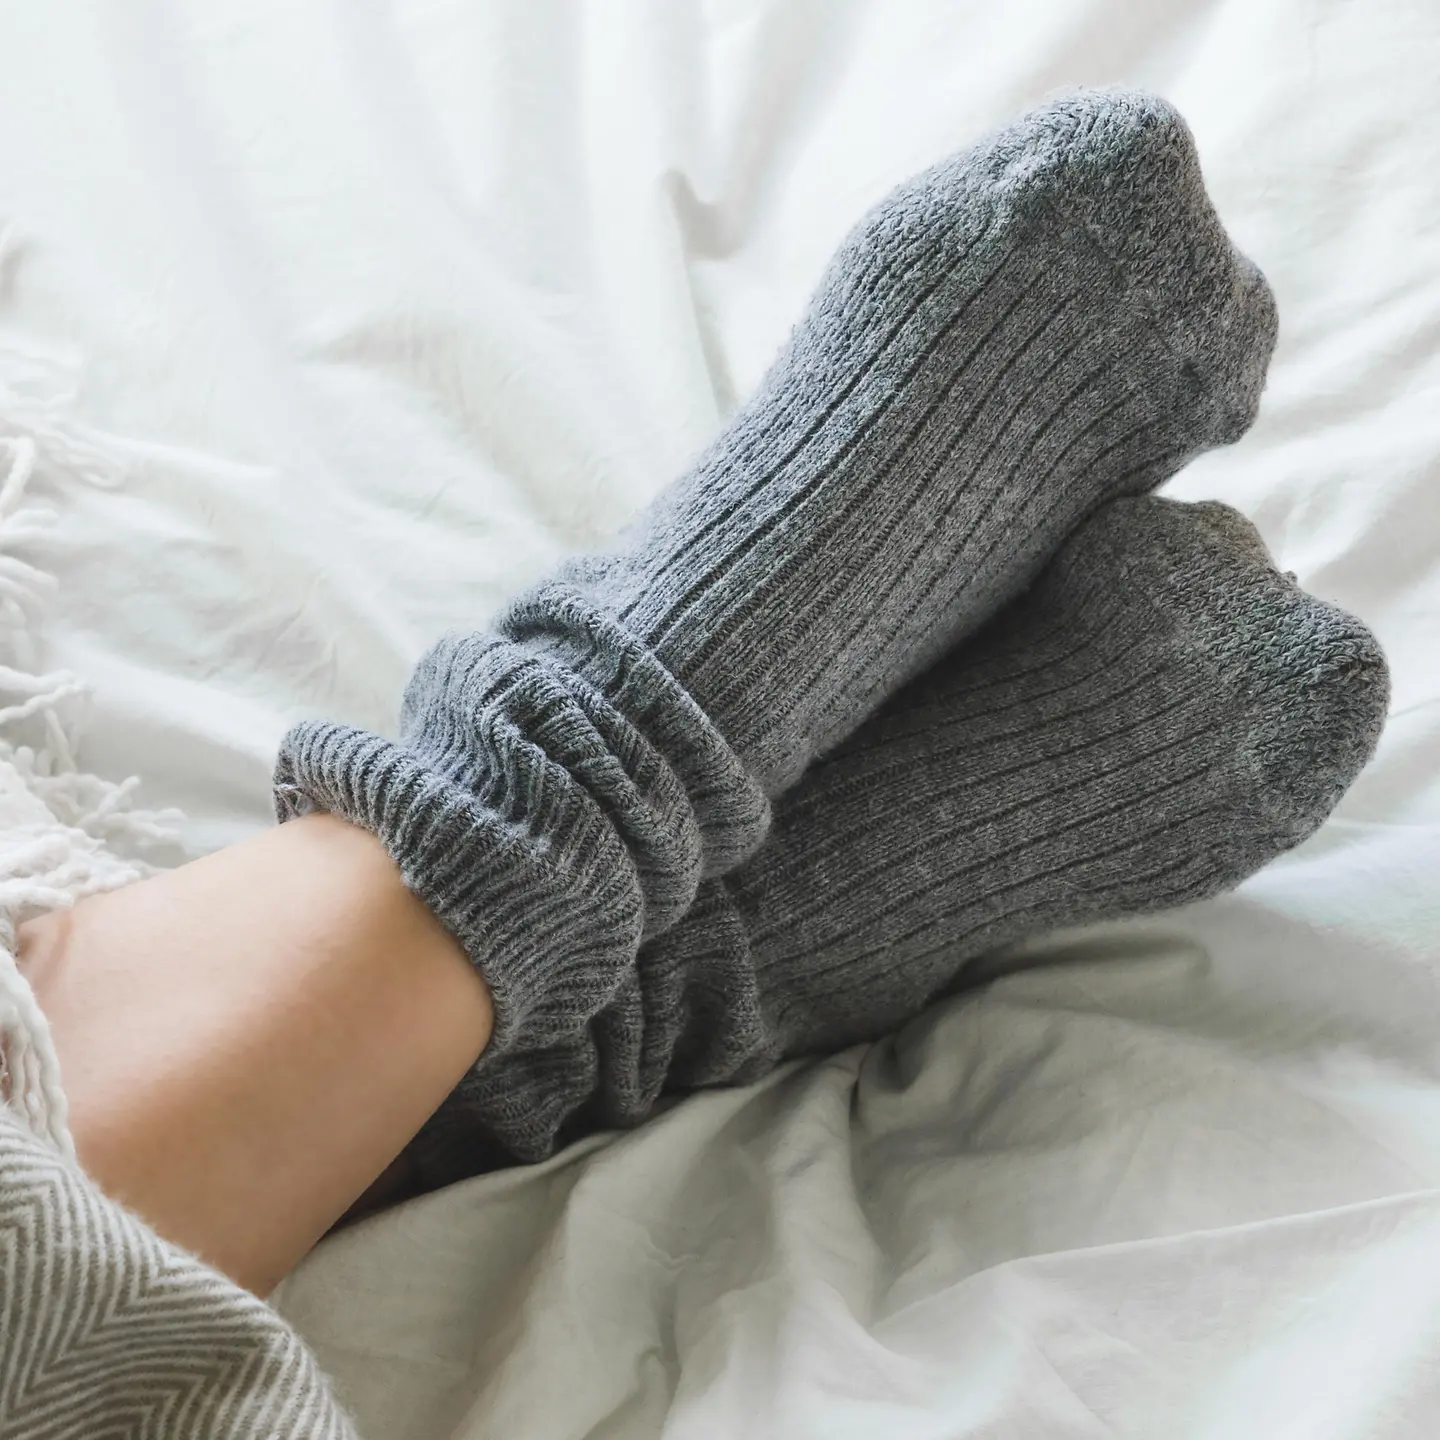 Das Bild zeigt die Füße einer Person, die warme Socken trägt.